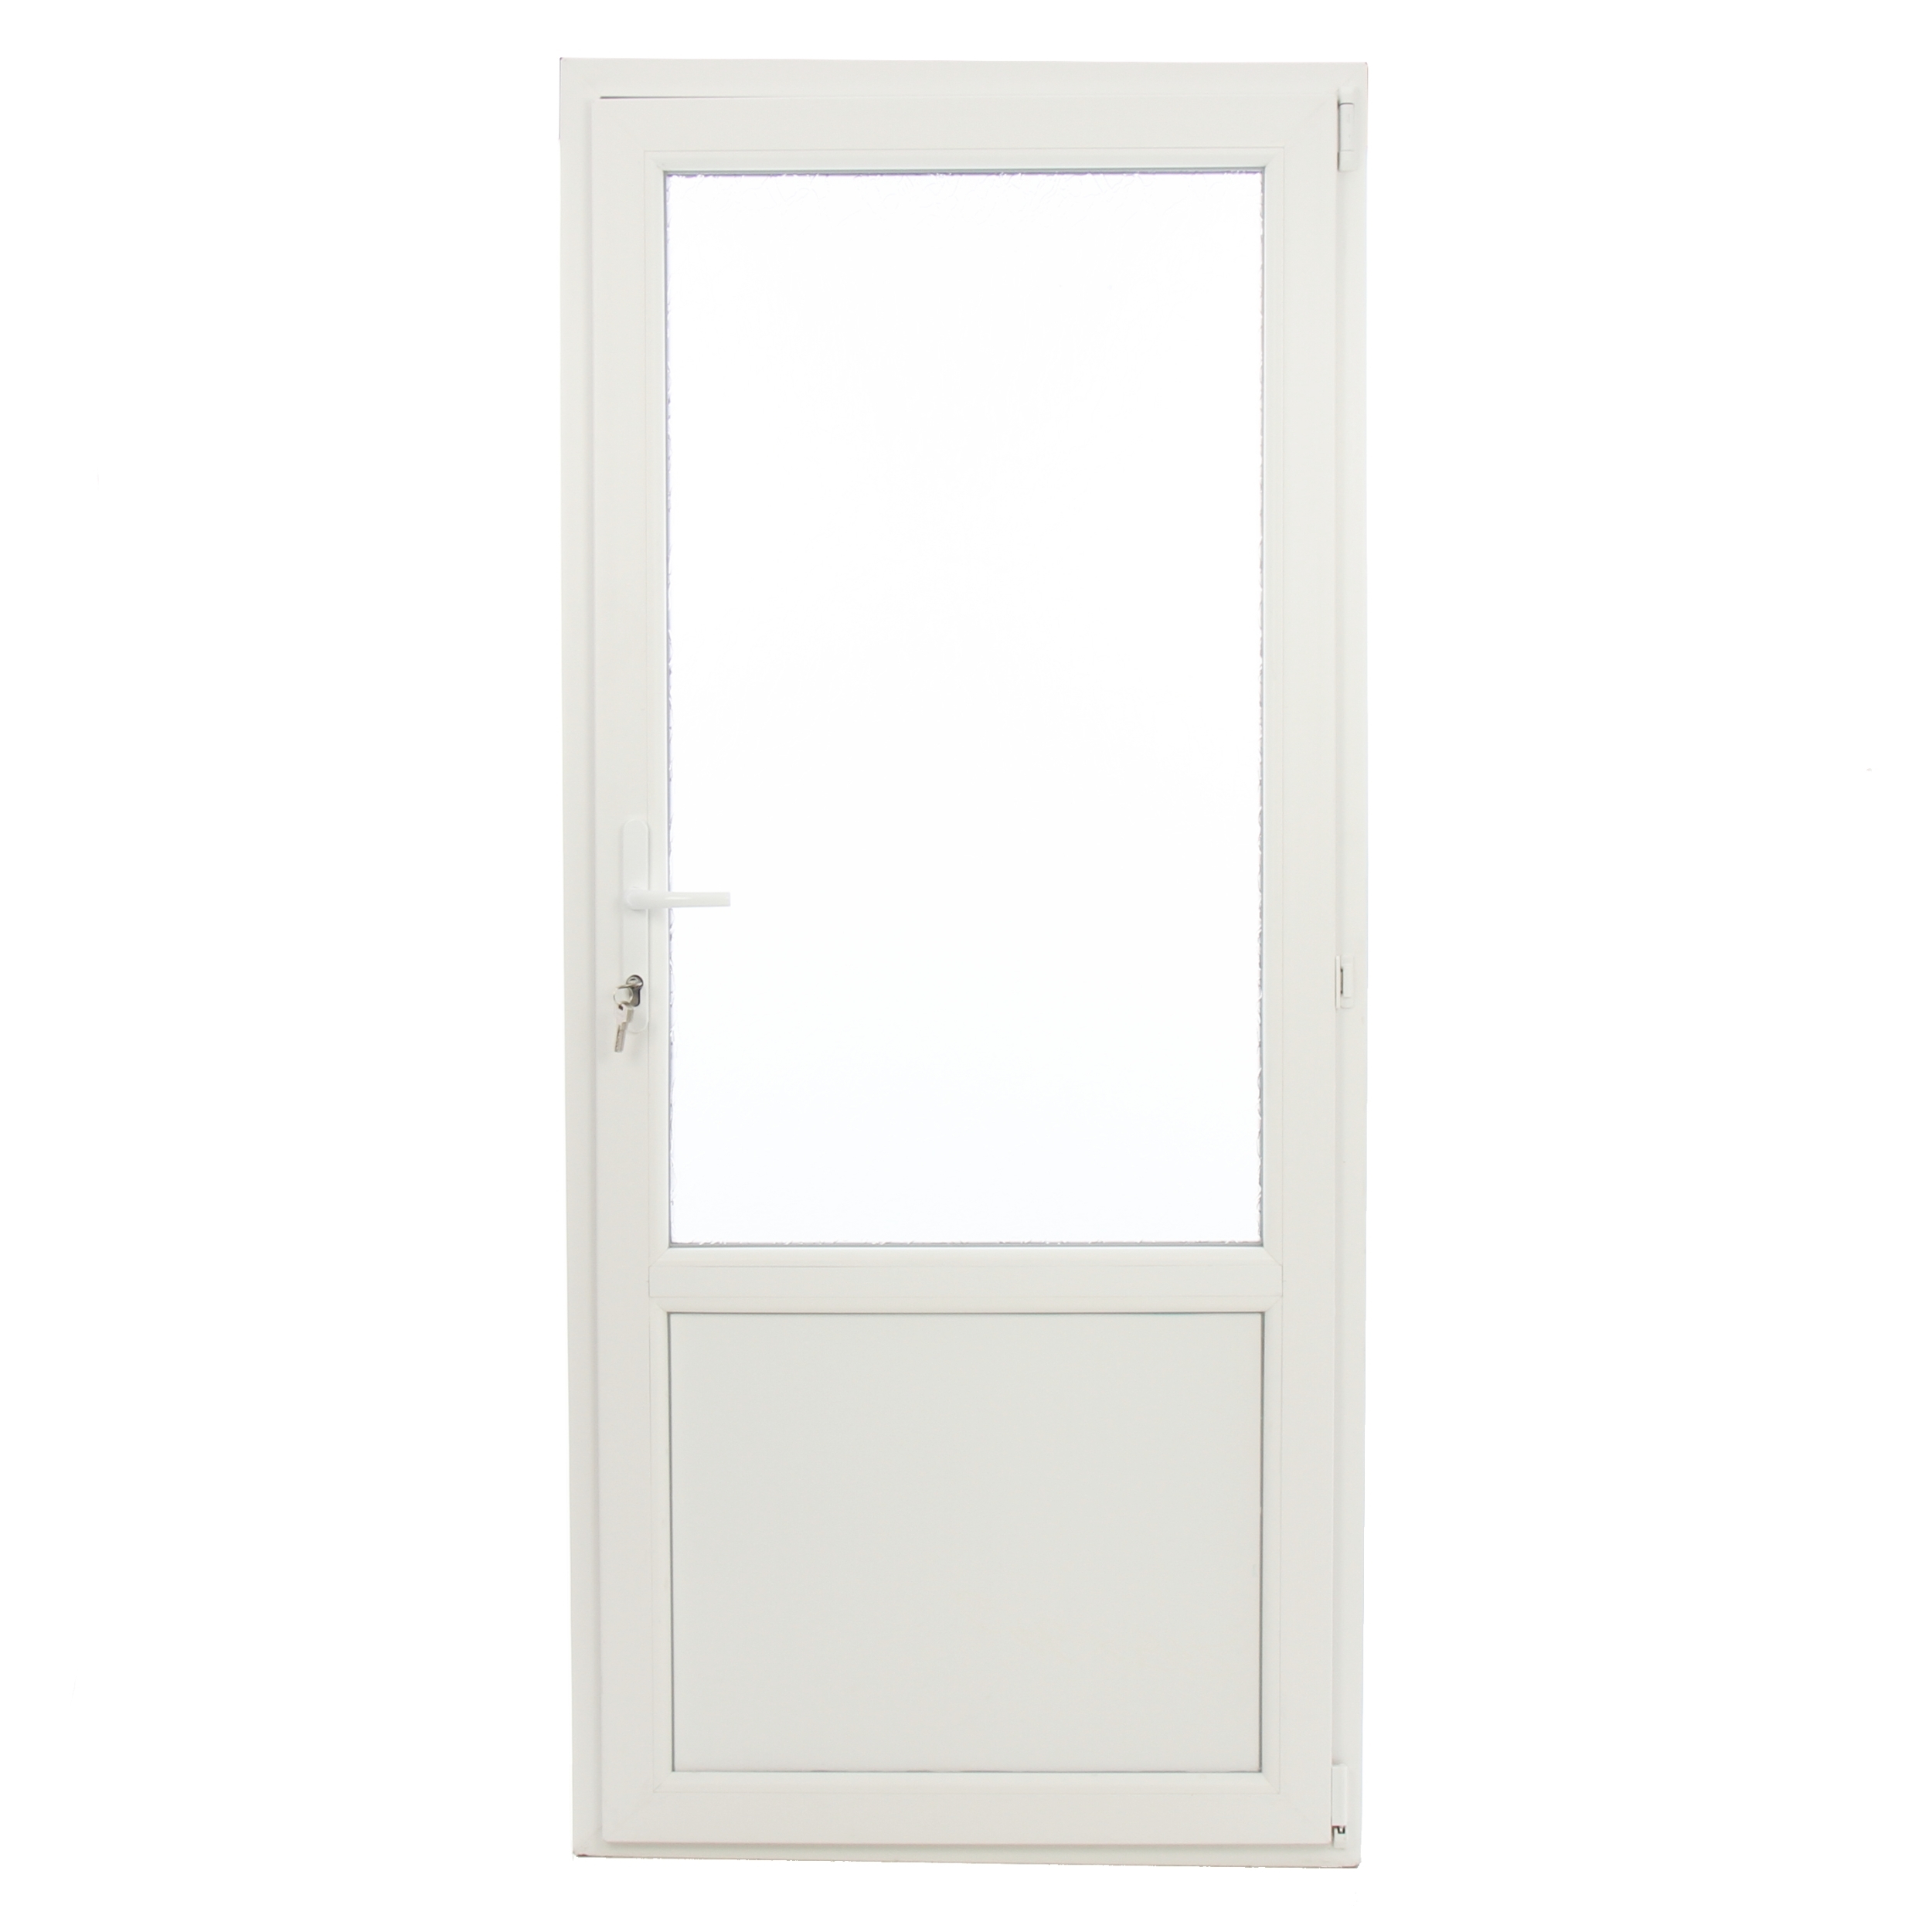 Dedeman - Usa exterior din PVC cu geam termopan 2/3, Far Est 2, 3 camere, prag PVC, dreapta, alb, 87 x 197 cm - Dedicat tale